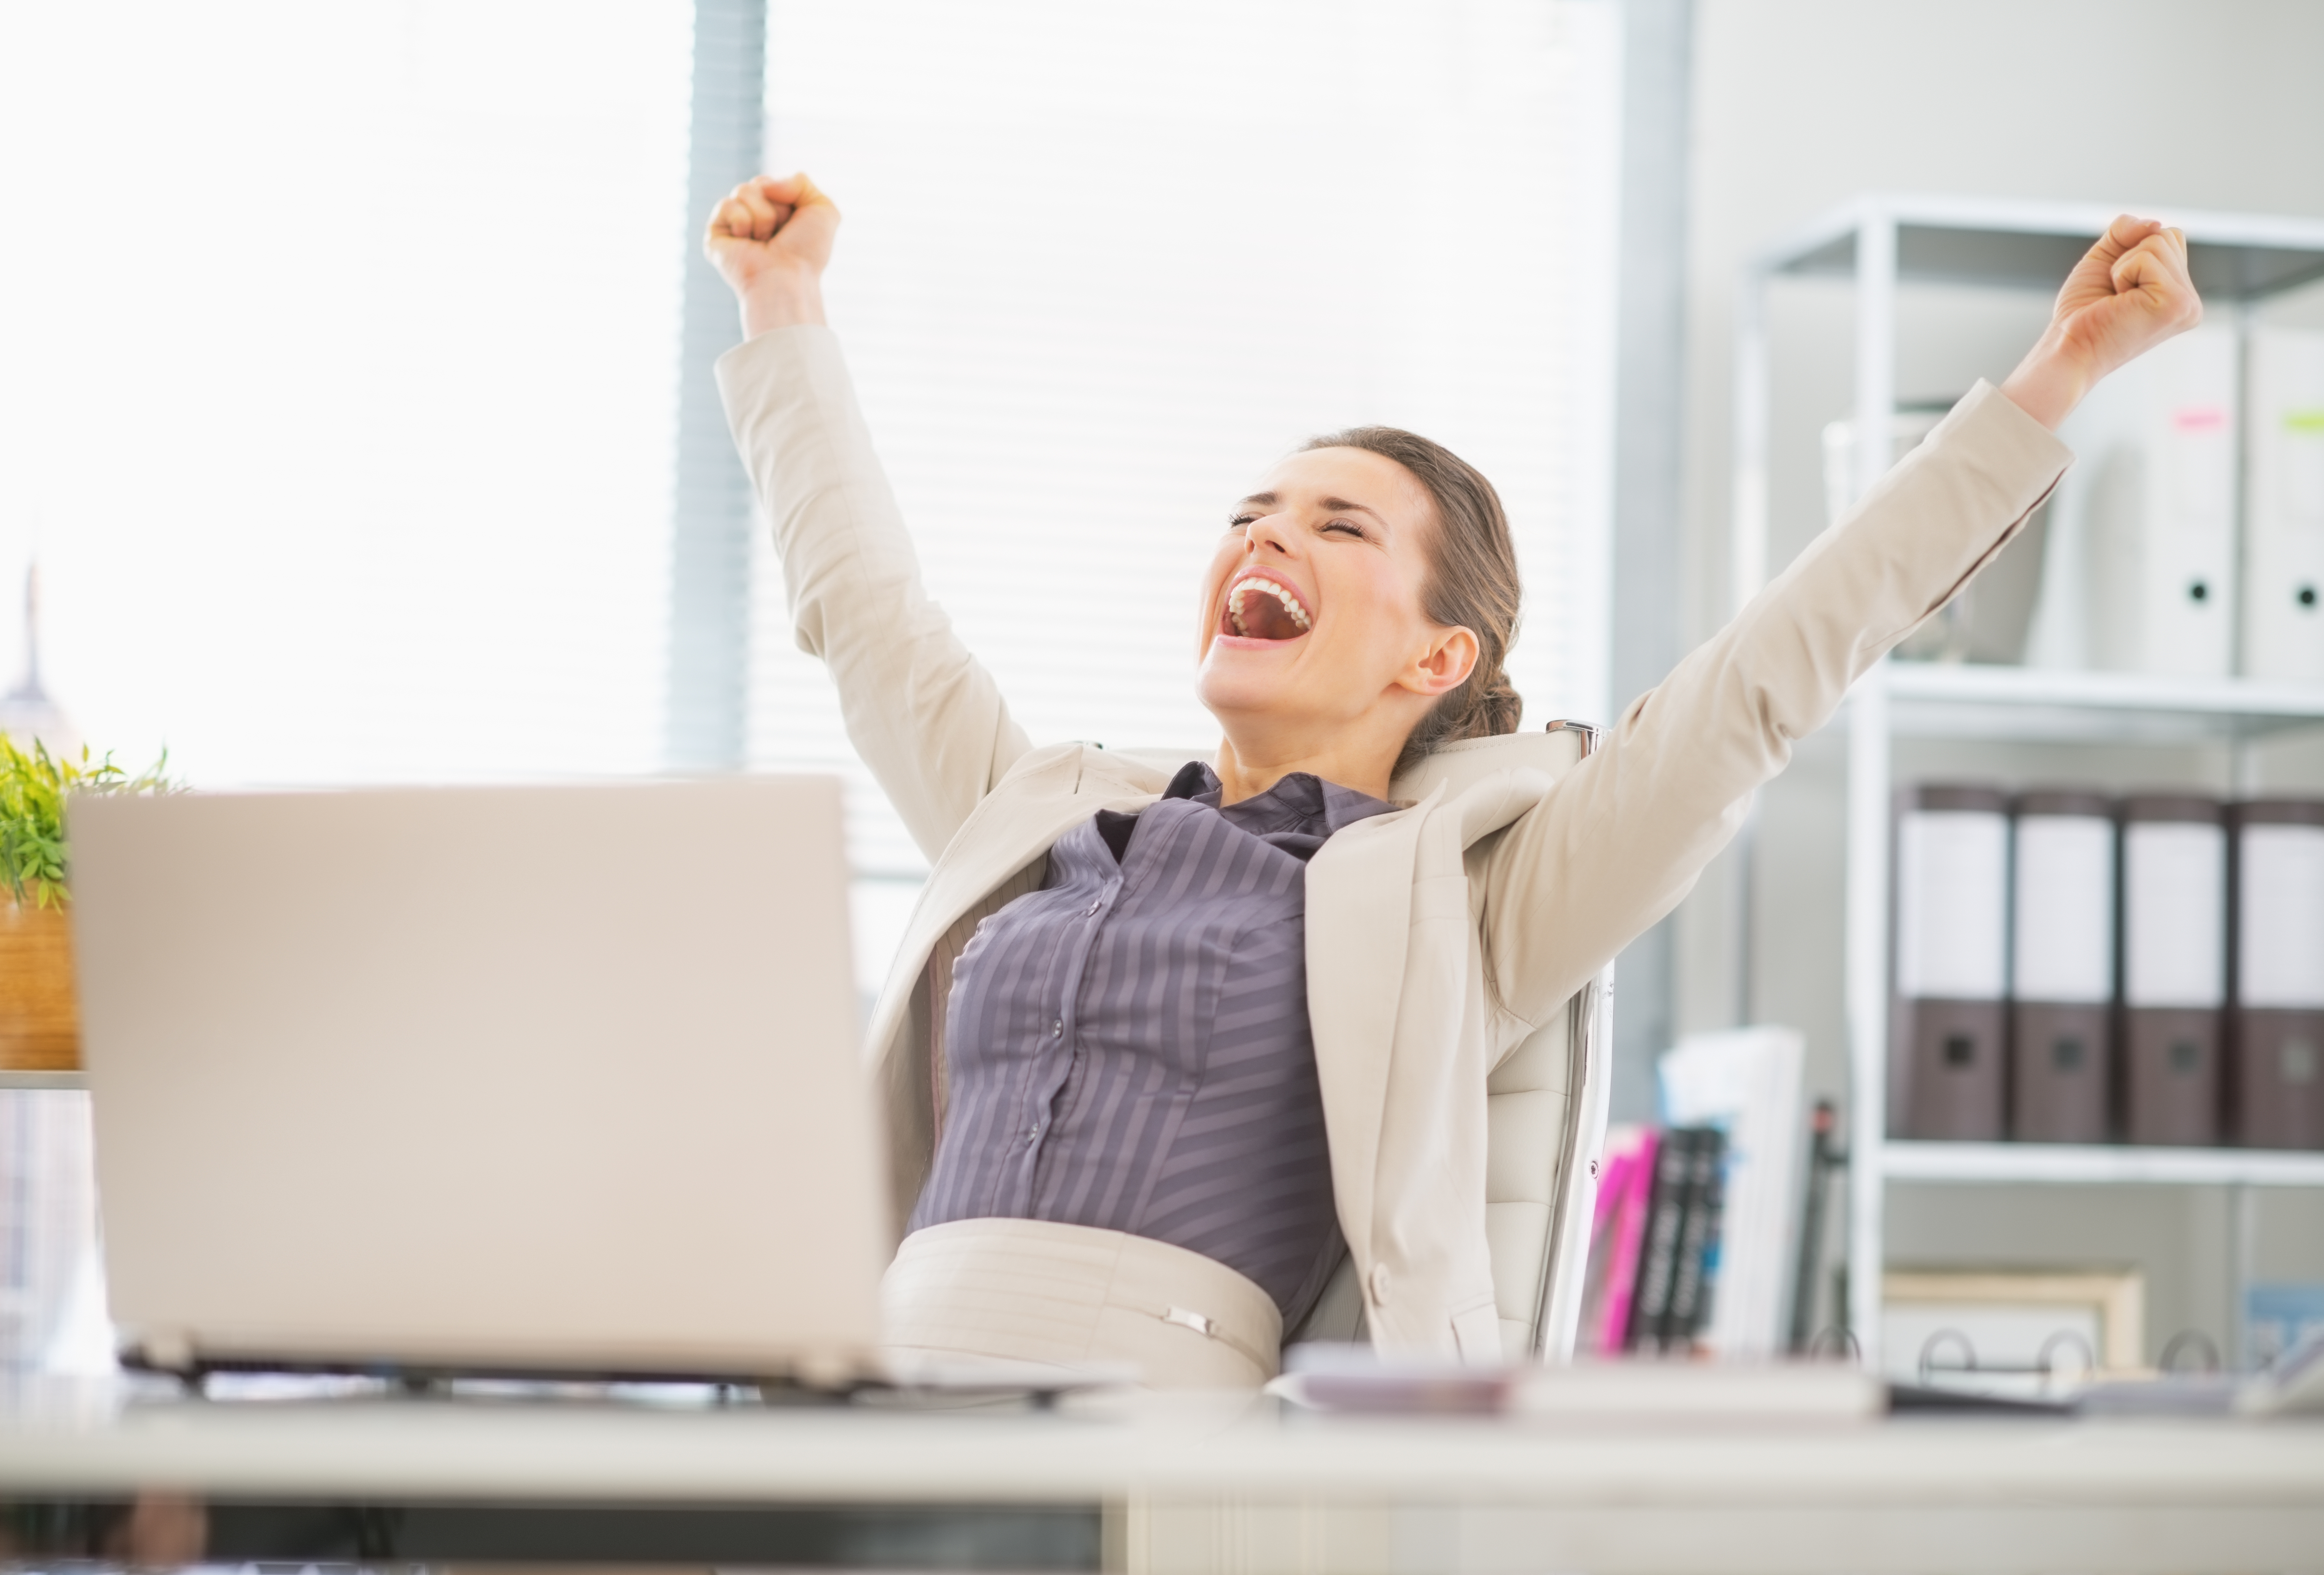 Бизнес удовольствие. Люди в офисе радуются. Счастливые люди в офисе. Женщина в офисе. Работа в радость.